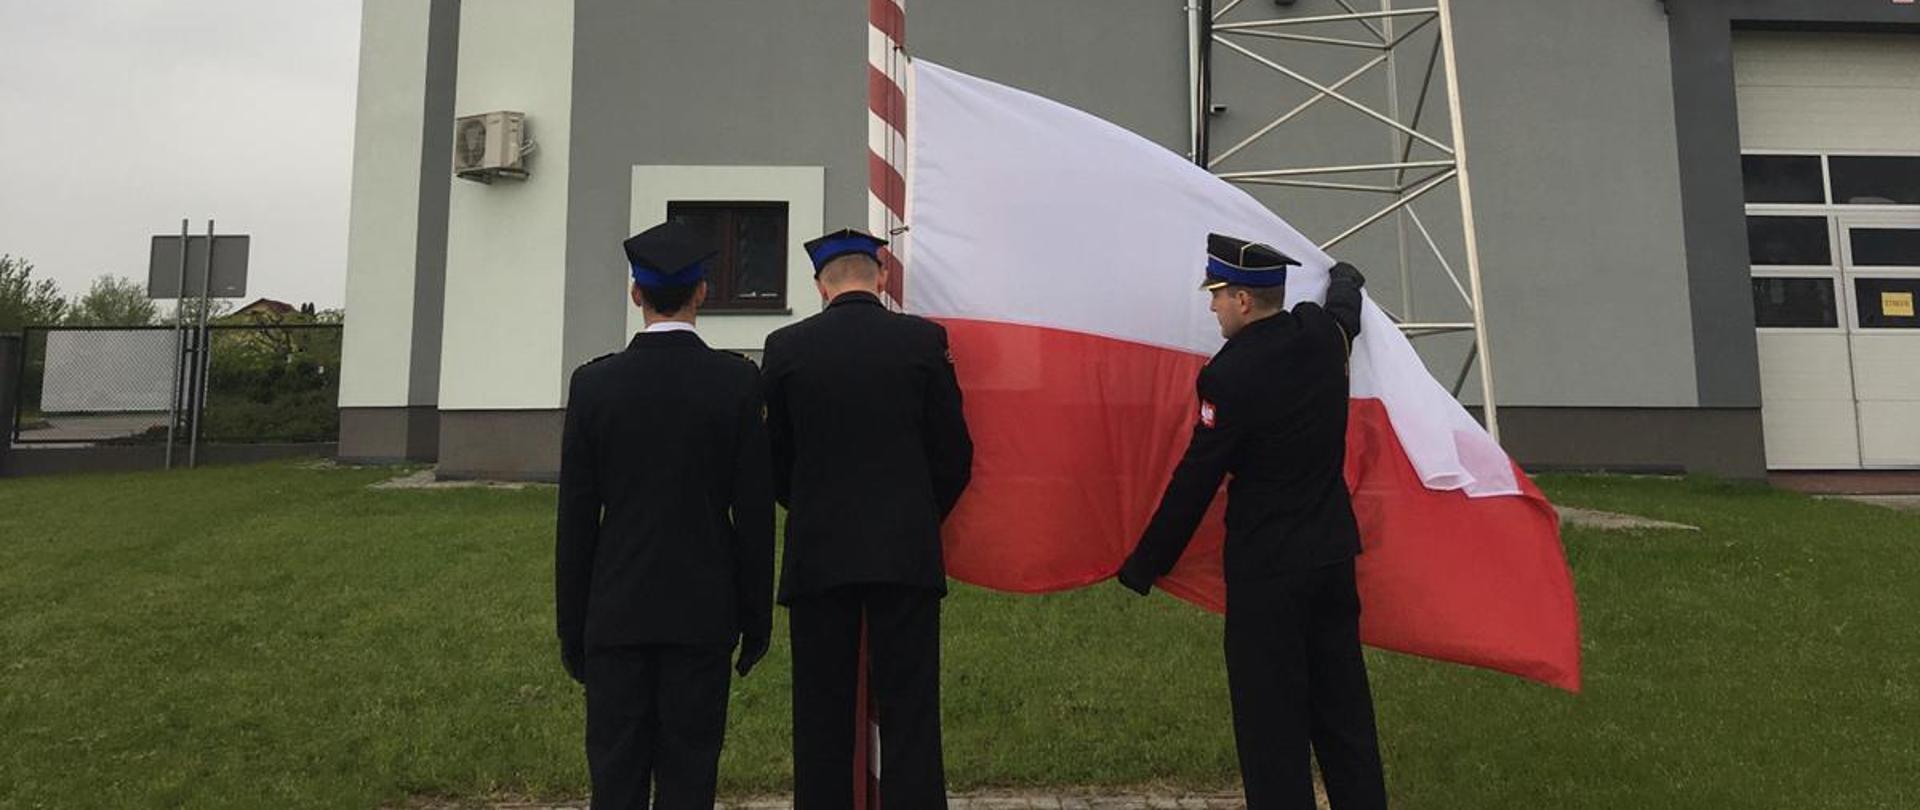 Troje strażaków w umundurowaniu wyjściowym zawiesza flagę Polski na maszt.